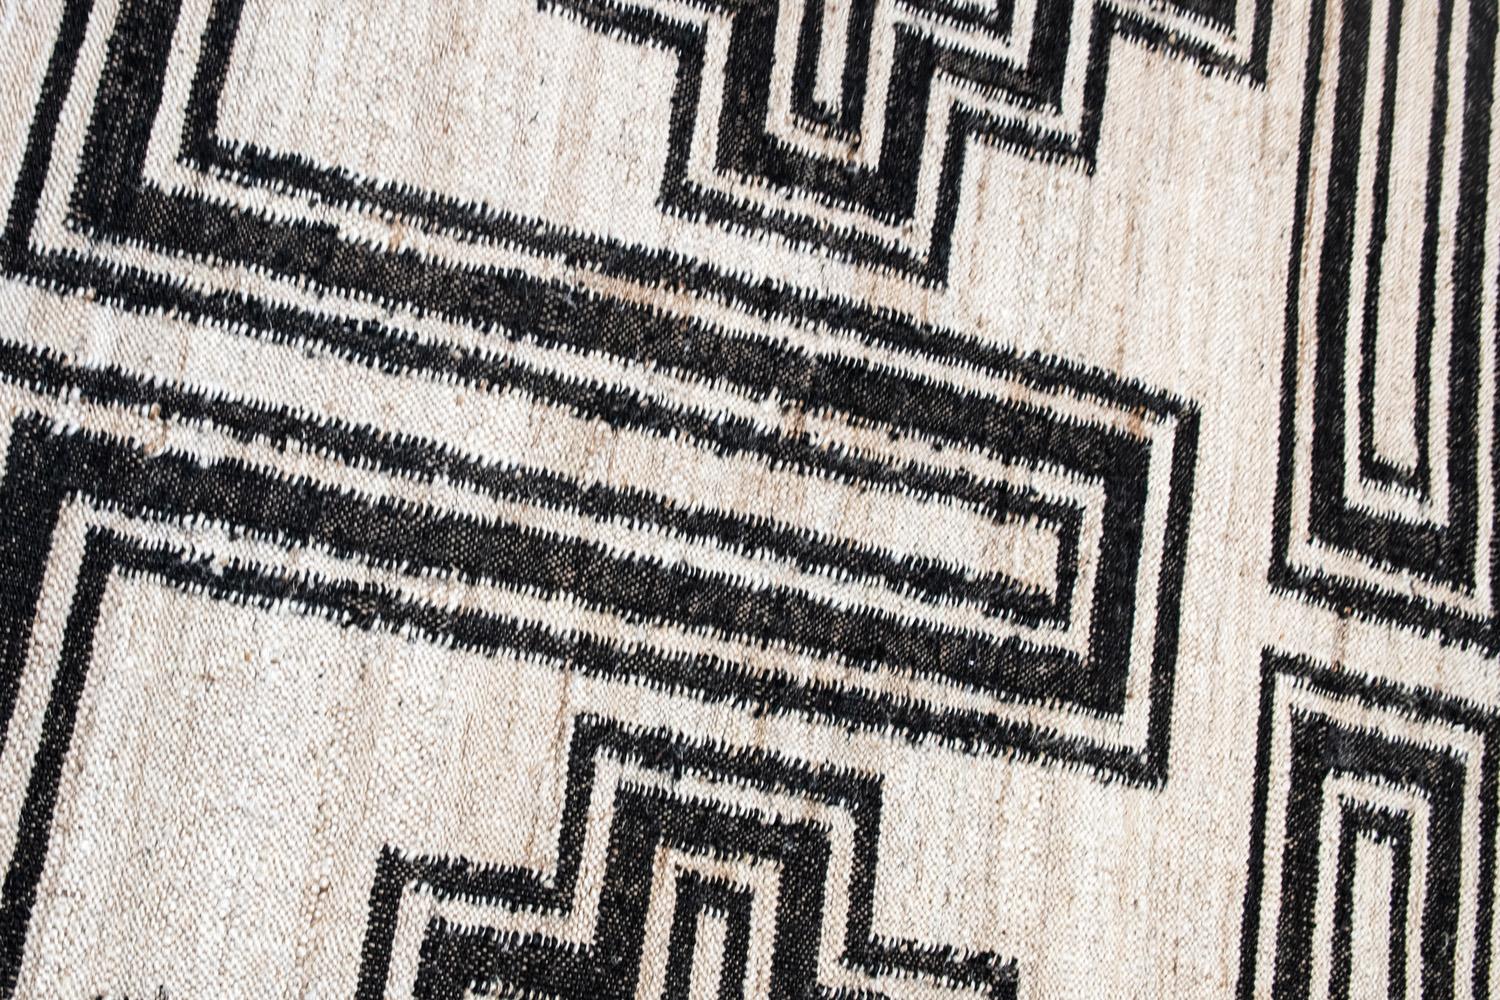 Ce tapis de jute a été tissé à la main de manière éthique dans les meilleurs fils de jute par des artisans du nord de l'Inde, en utilisant une technique de tissage traditionnelle de cette région.
Chaque tapis est tissé à la main avec des détails